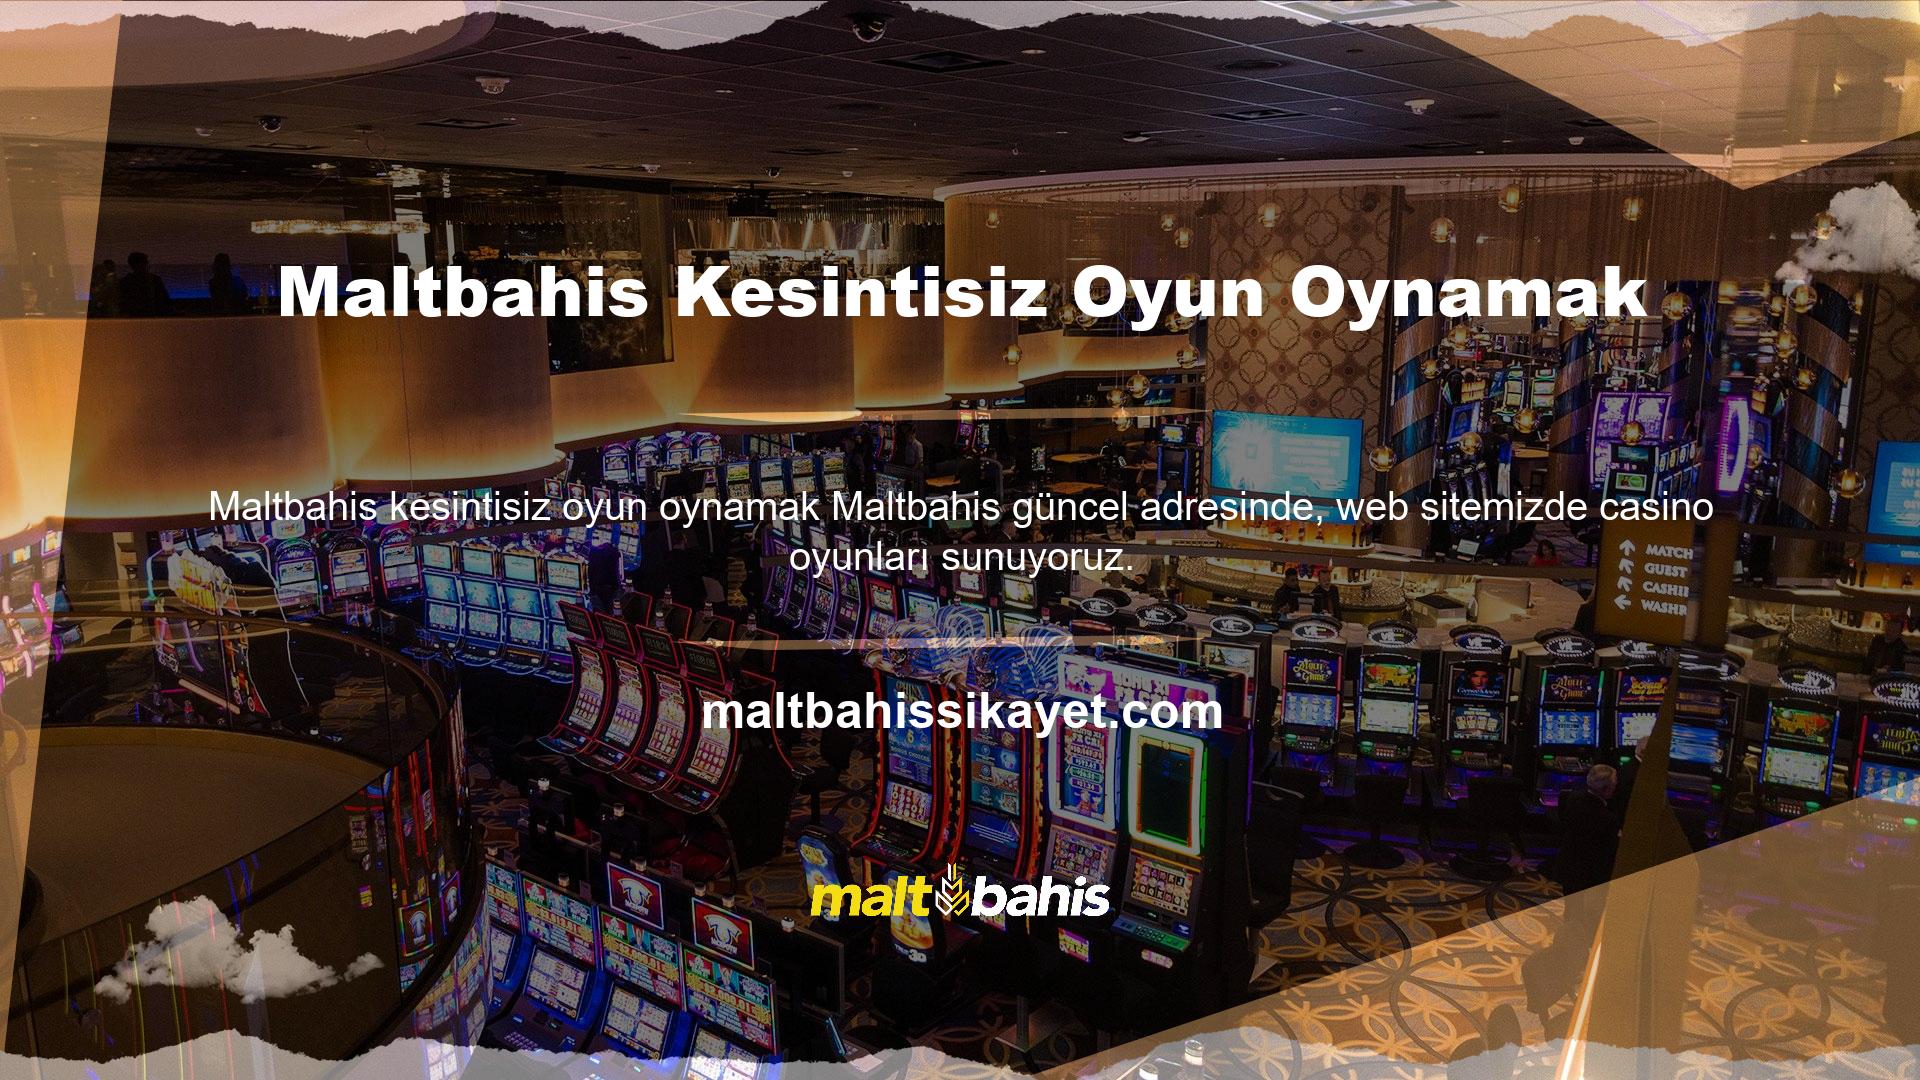 Casino oyunları, canlı yayın odasında krupiyelerle canlı olarak oynanır